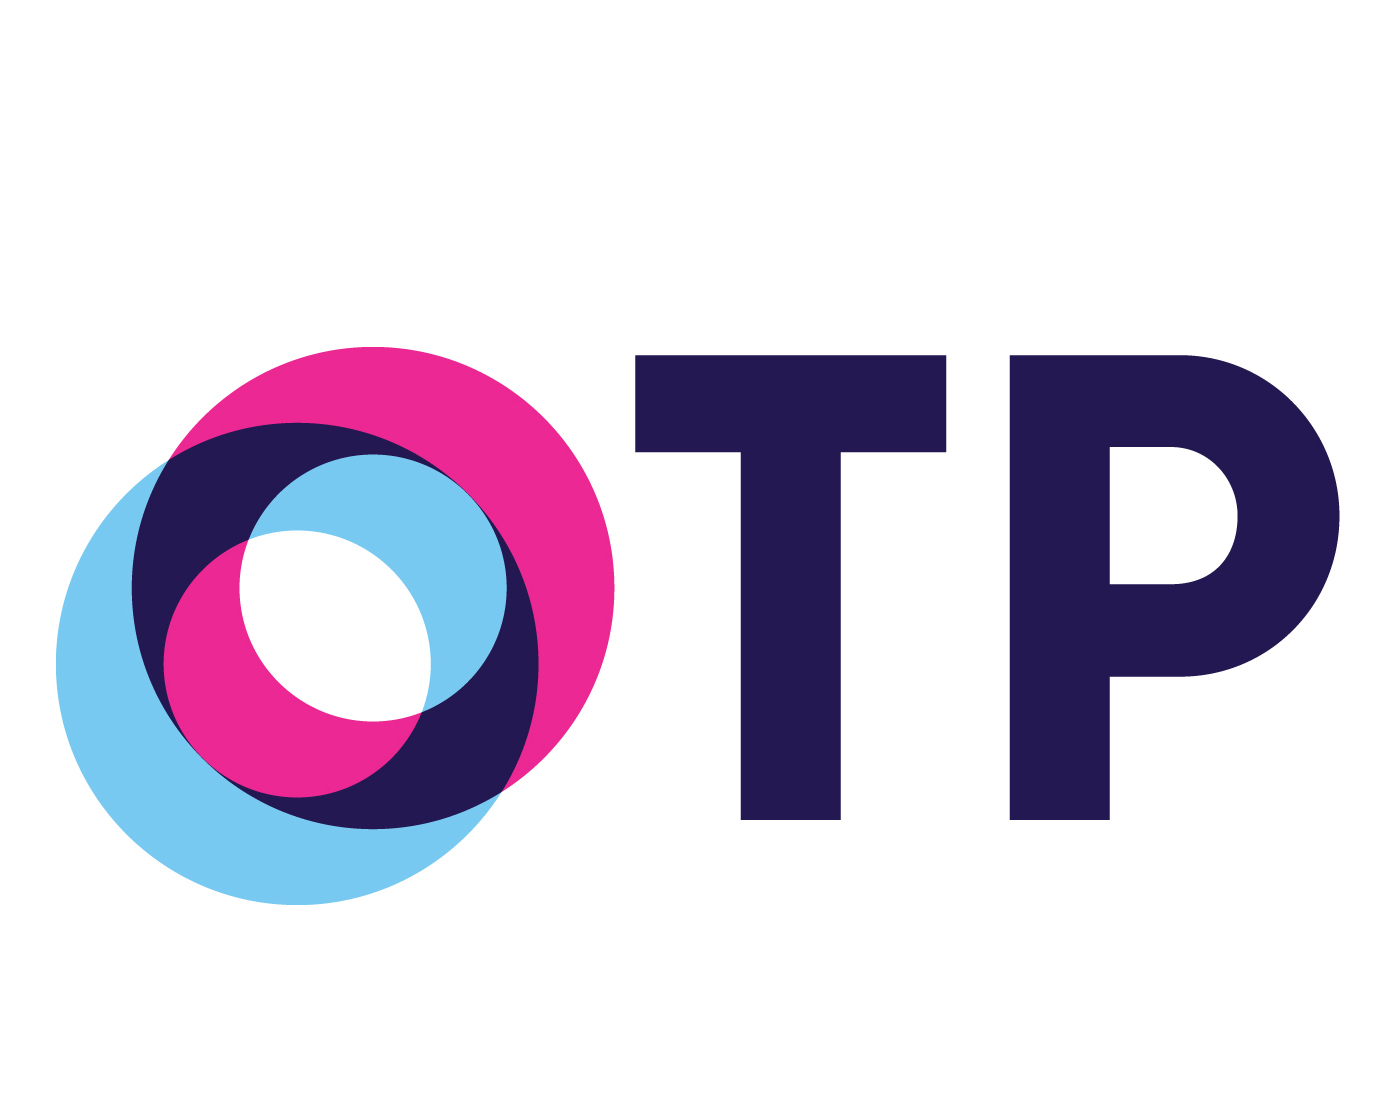 Канал пд. Логотип телевизионного канала ОТР. Логотип канала ОТР новый. Логотип телеканала ОТР 2022. Общественное Телевидение России ОТР.